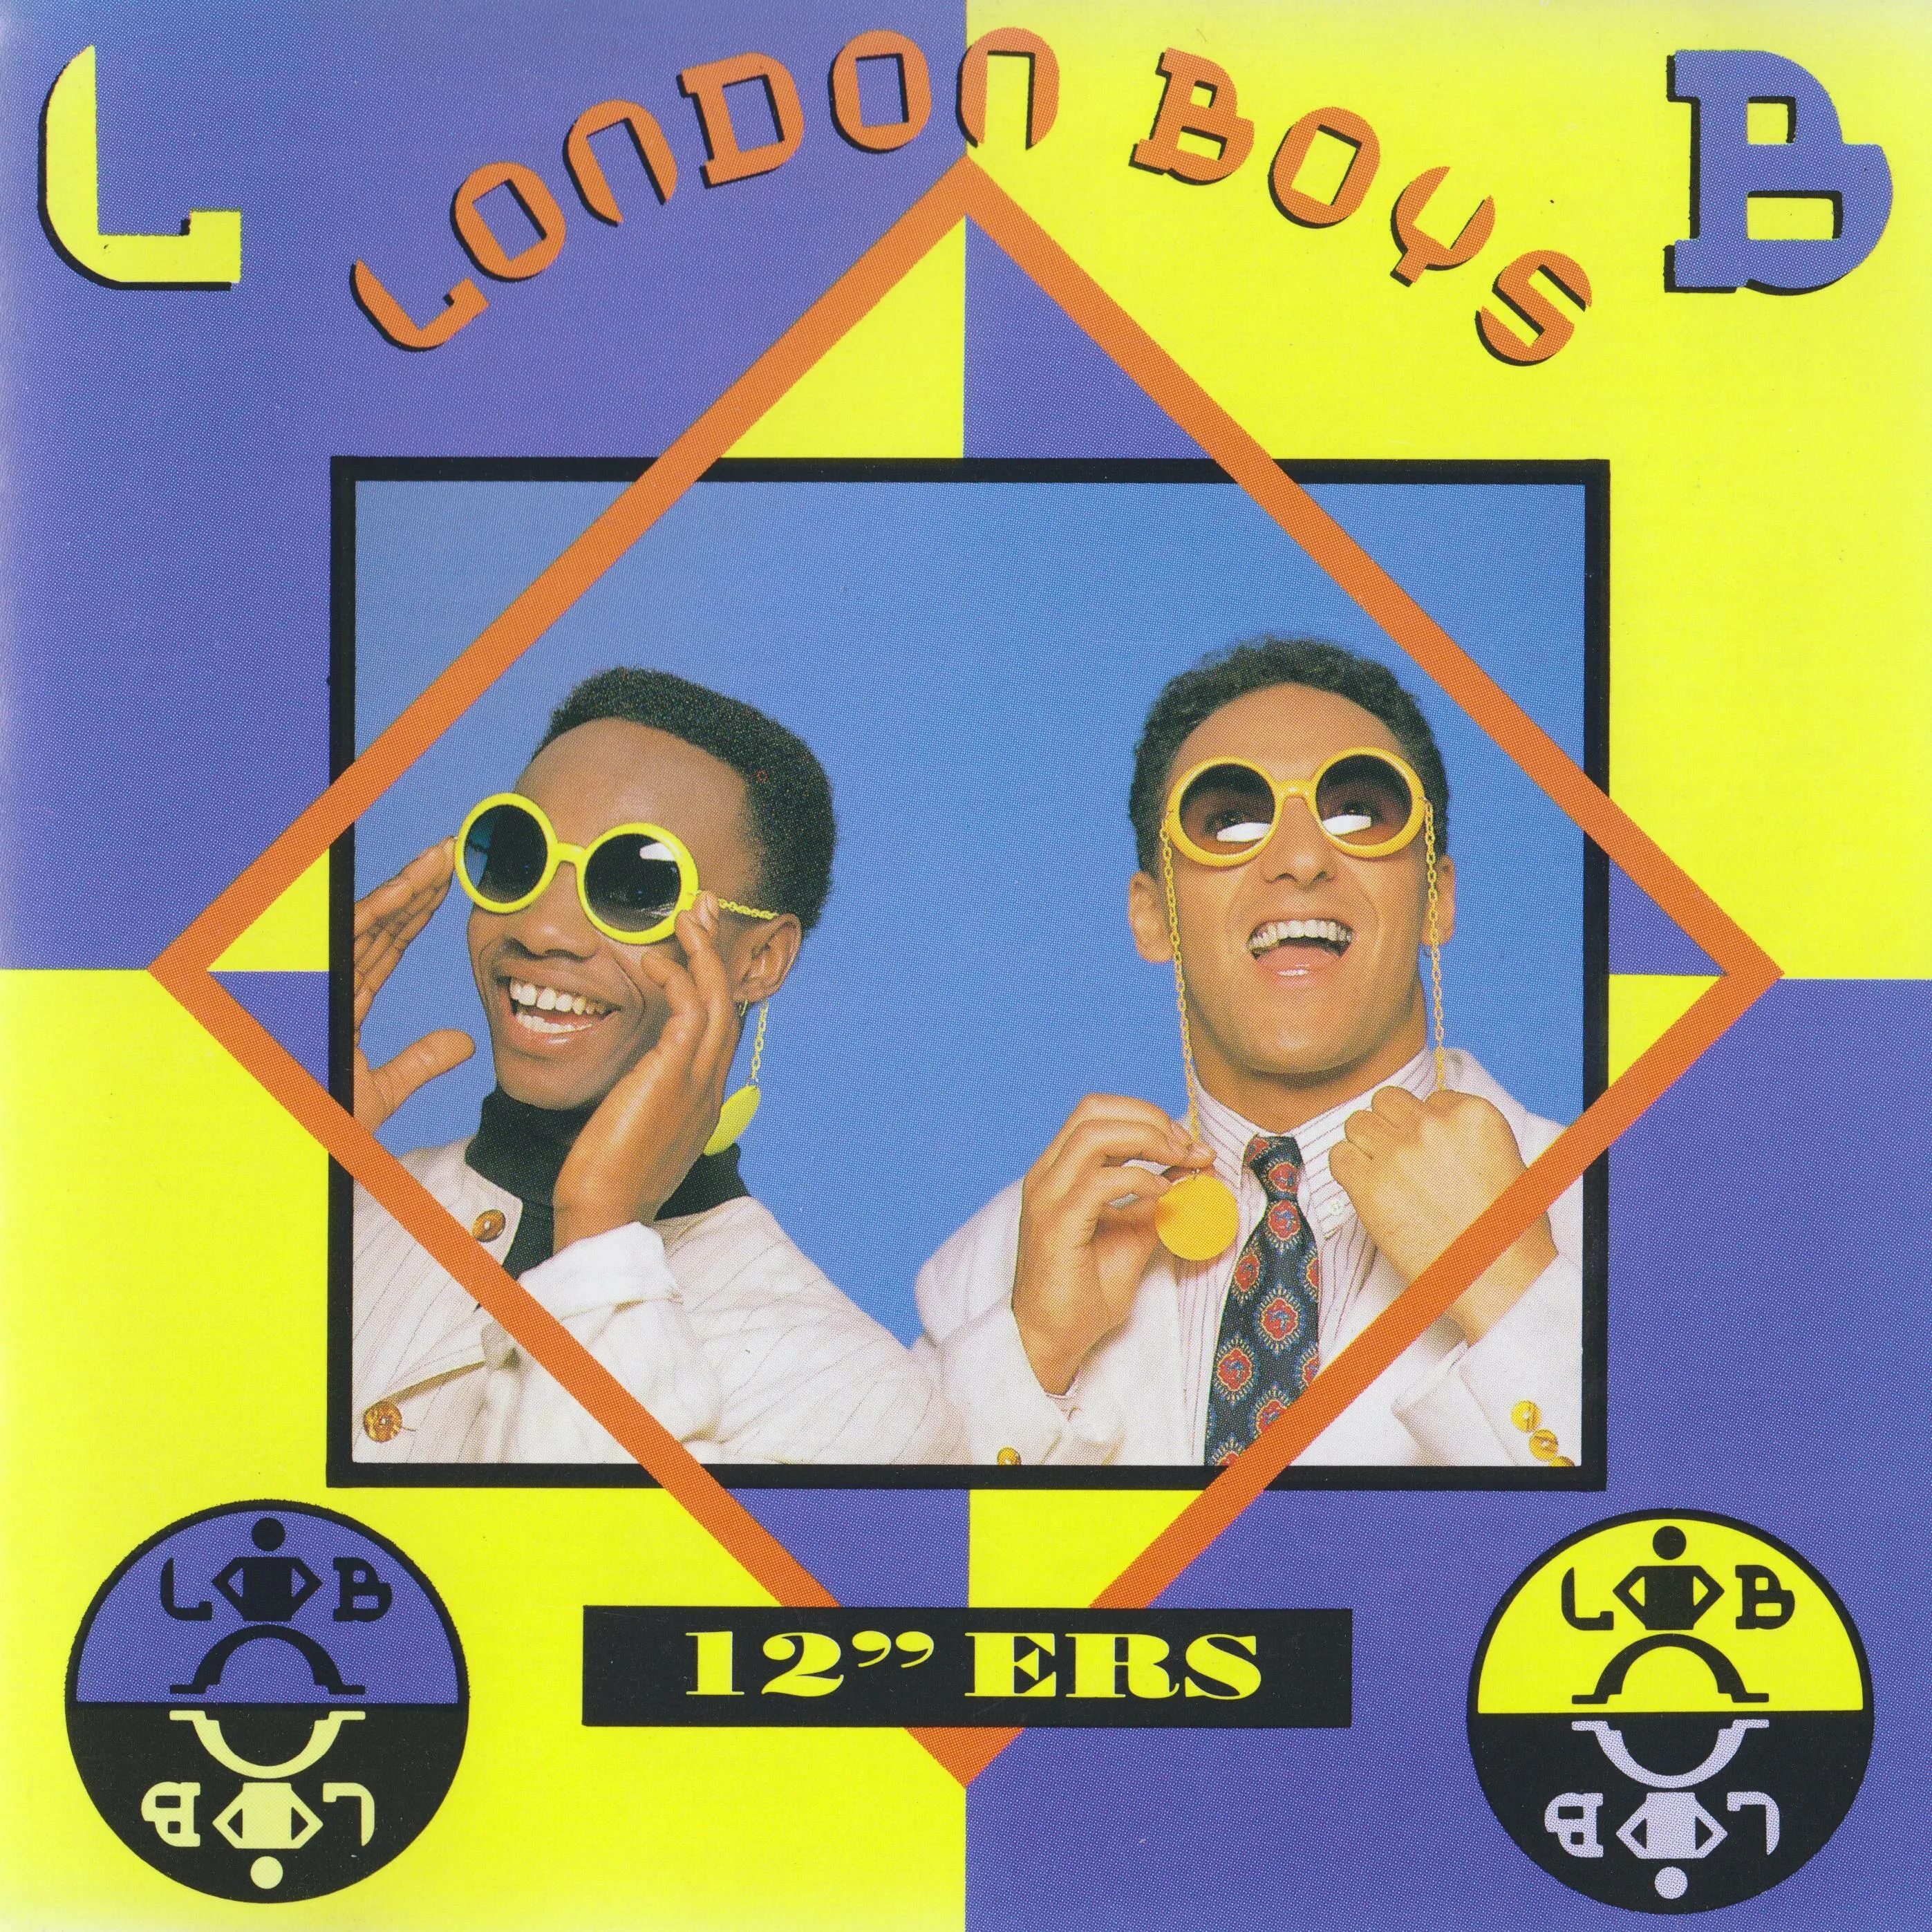 Группа London boys. London boys обложки альбомов. Фото группы Лондон бойс.